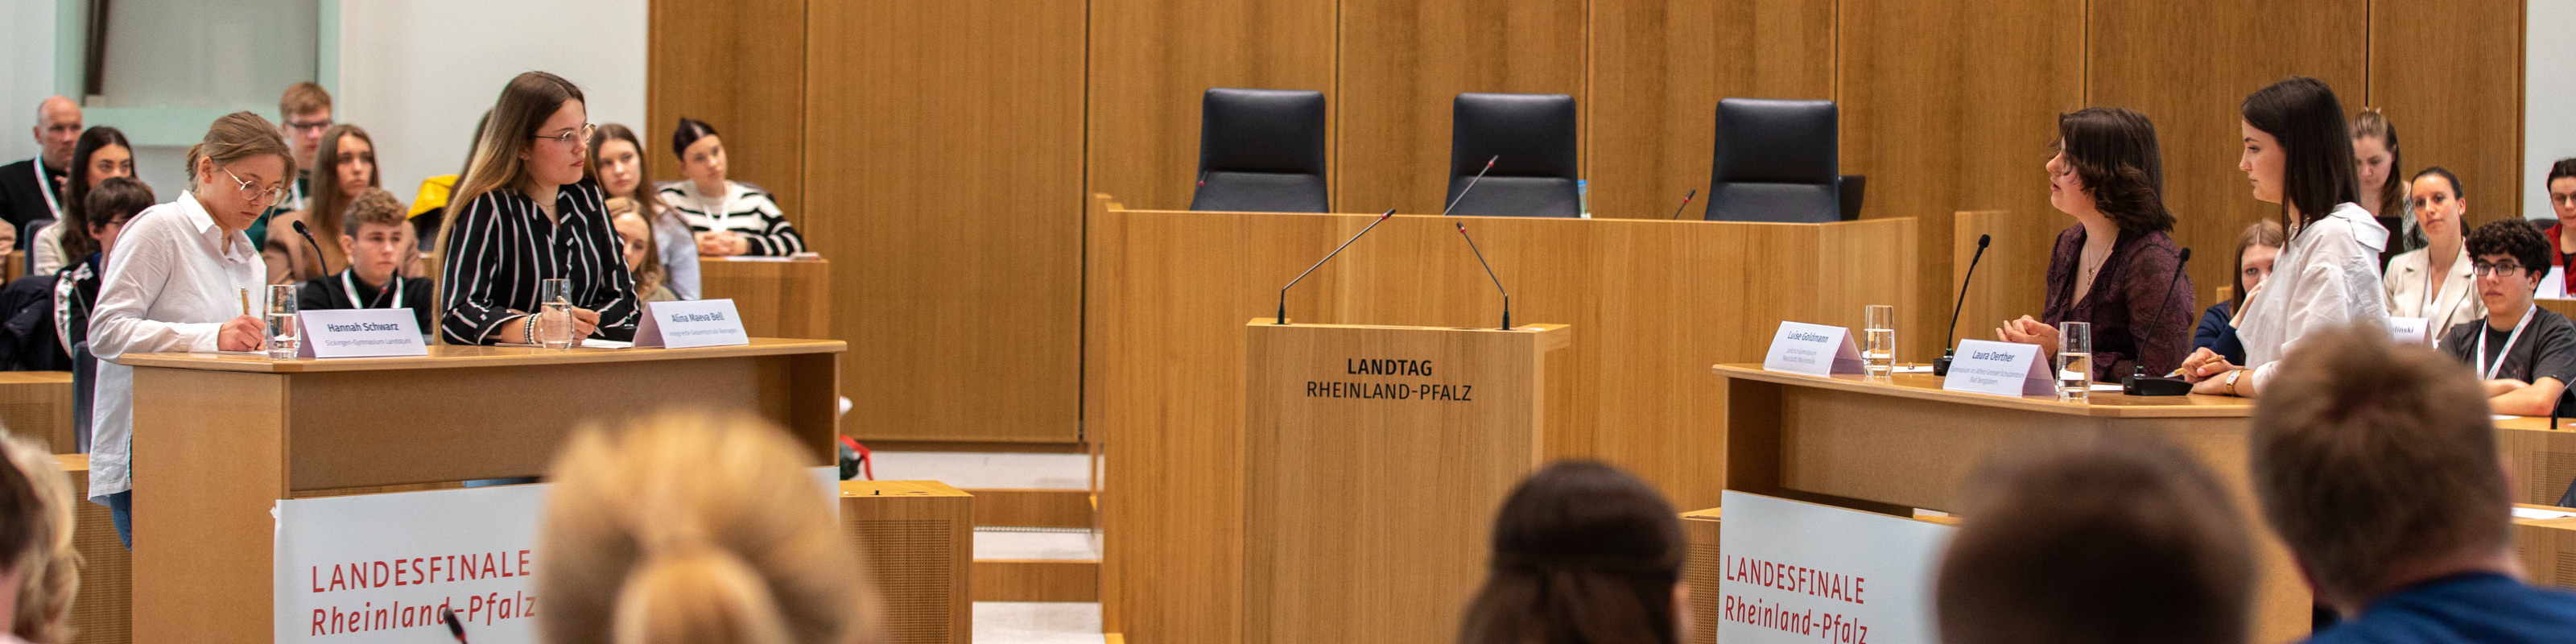 Das Bild zeigt das Landesfinale von Jugend debattiert, bei dem Schülerinnen im Plenarsaal des Landtags debattieren.